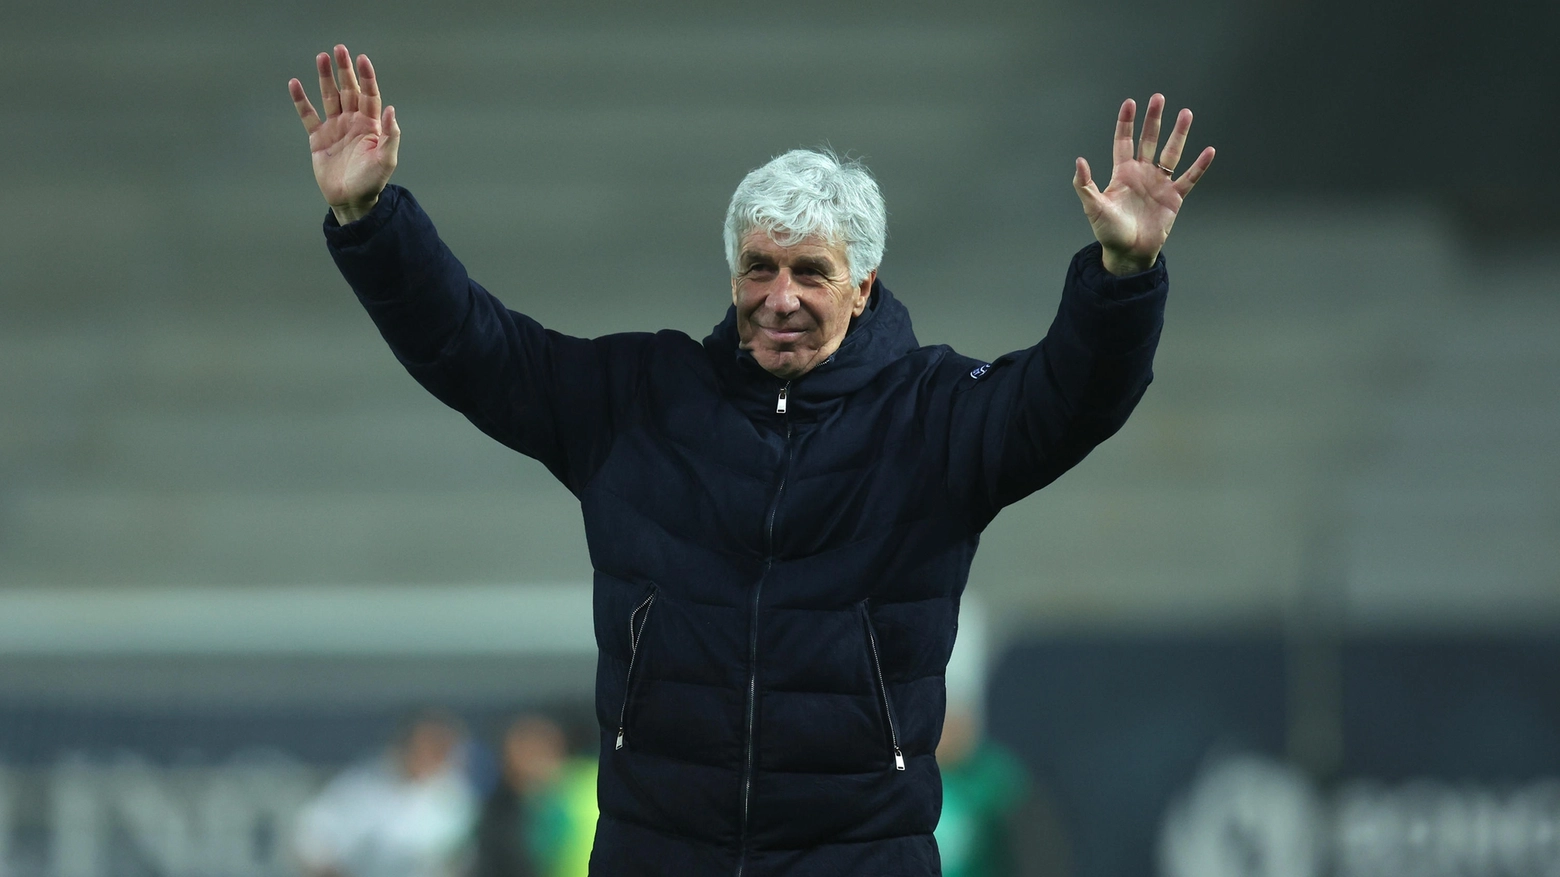 L'allenatore dell'Atalanta Gian Piero Gasperini festeggia la vittoria